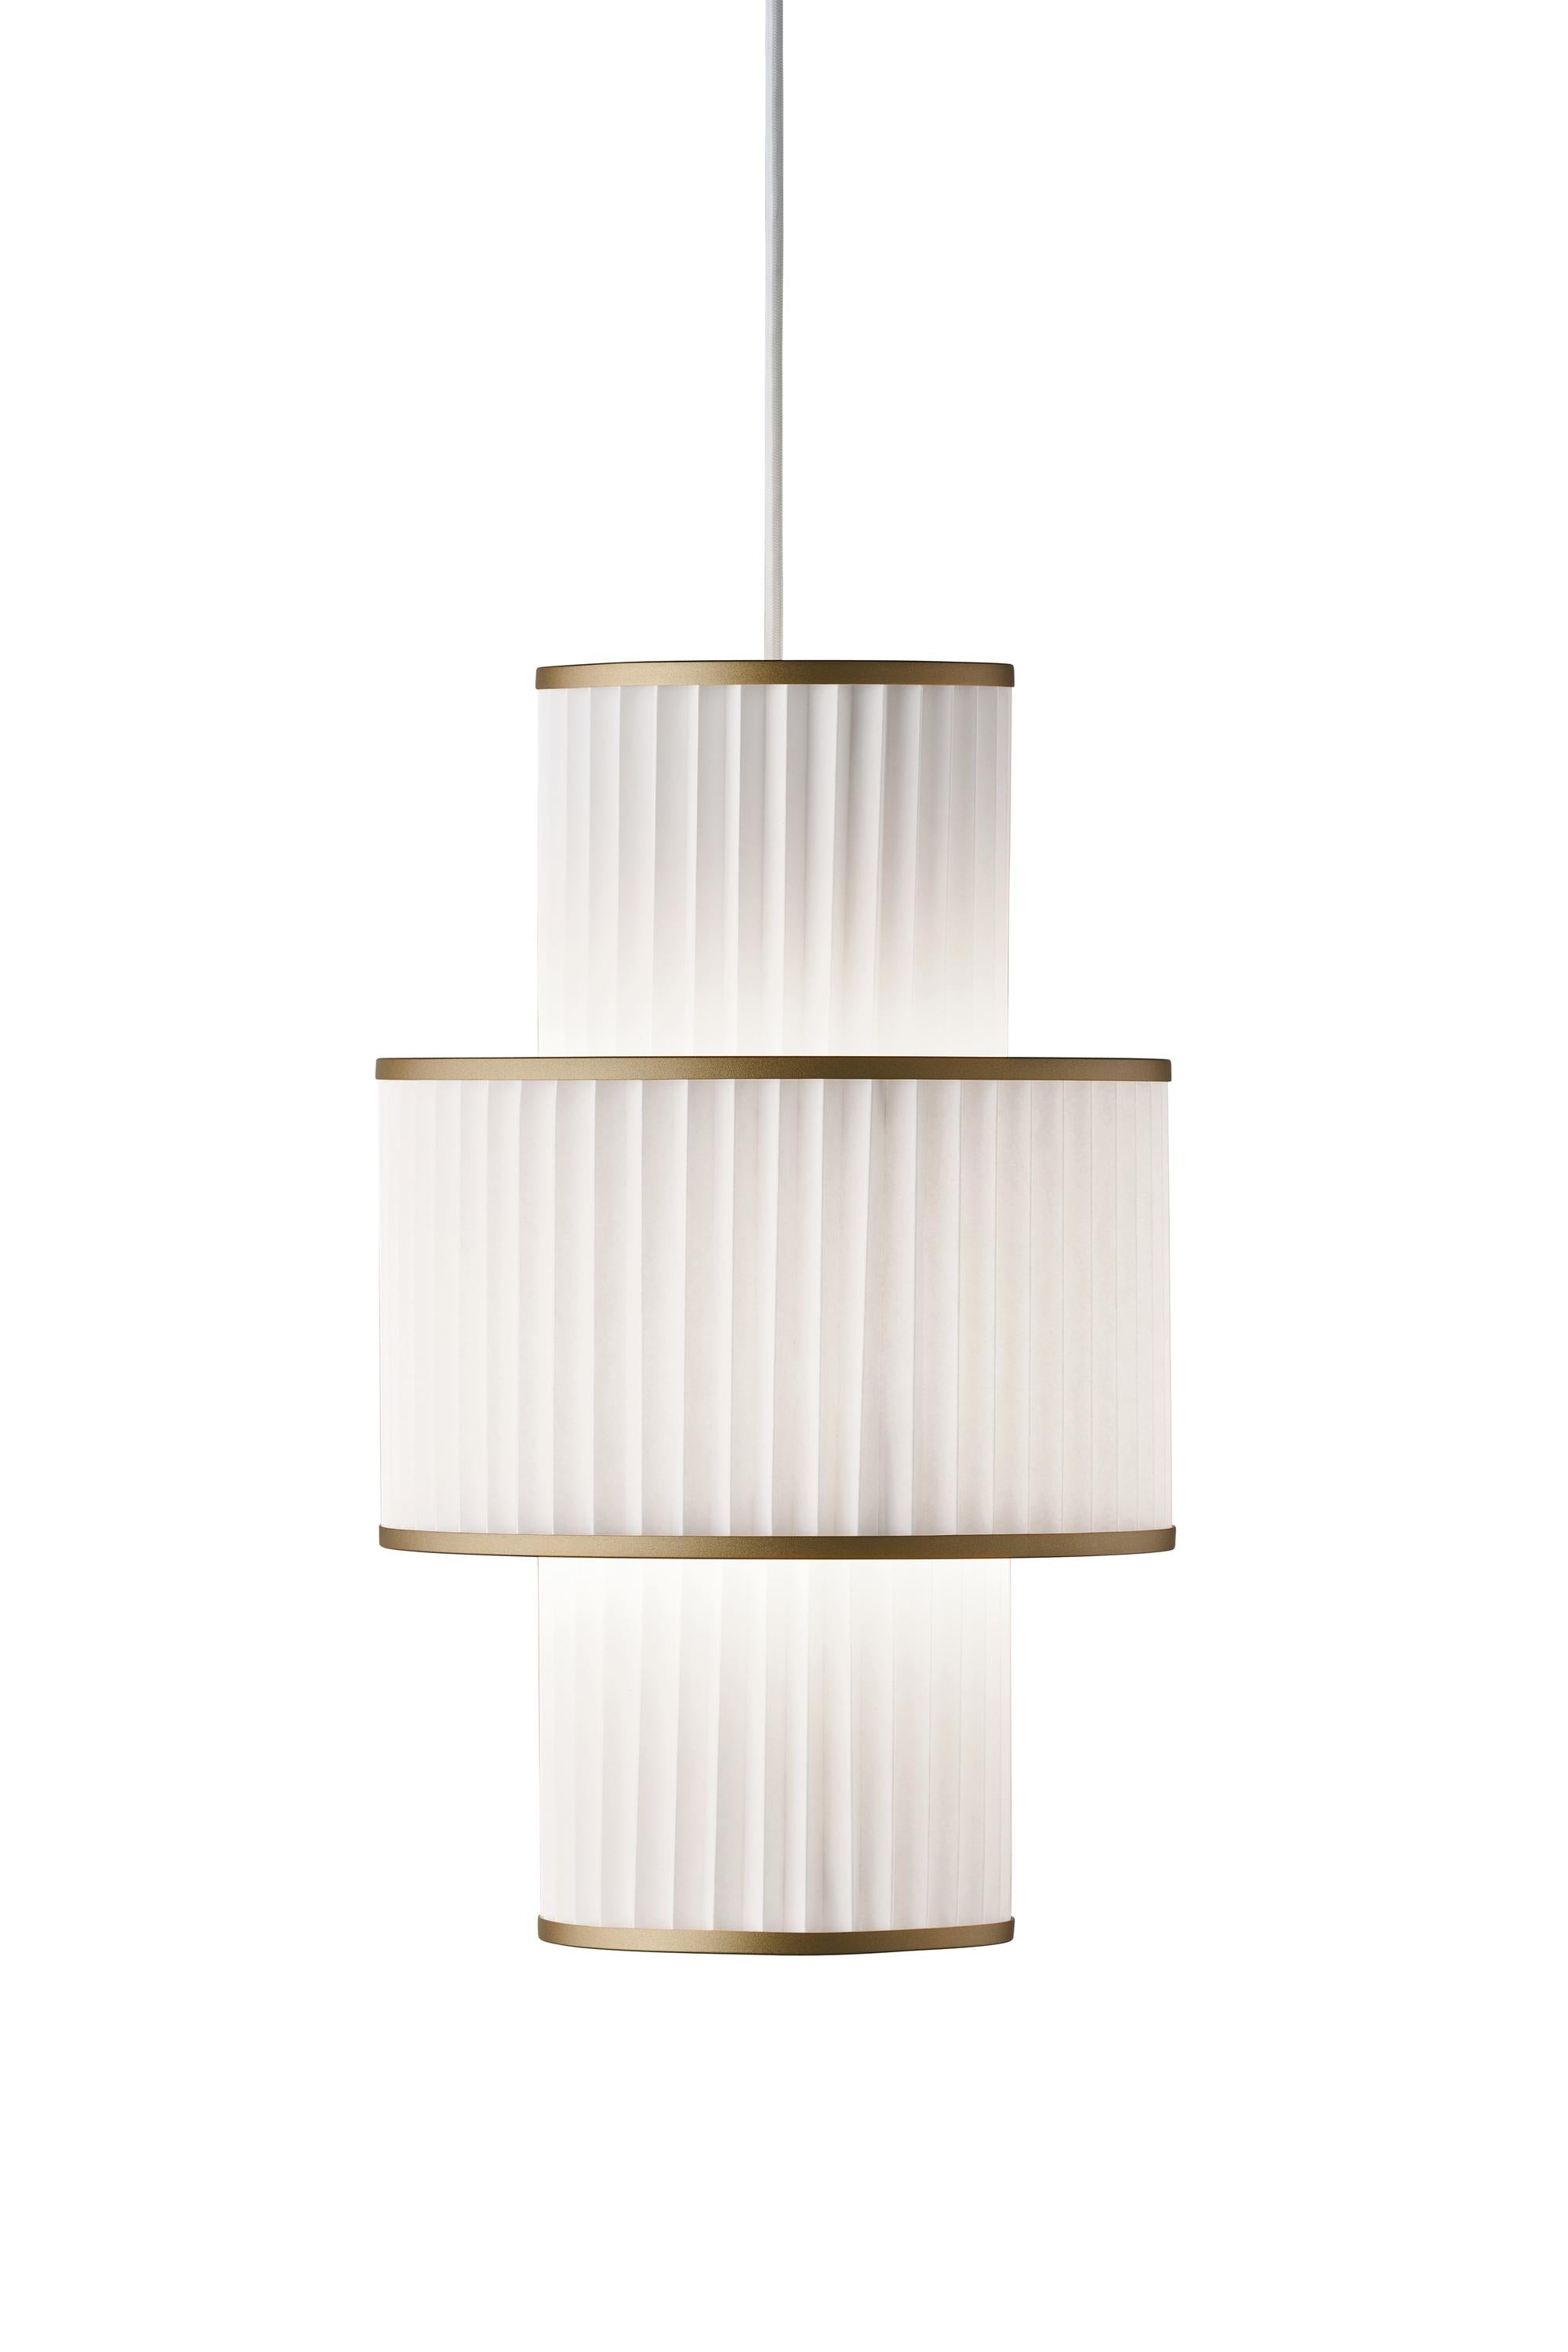 Le Klint Plivello Suspension Lamp Golden/White med 3 nuancer (S M S)